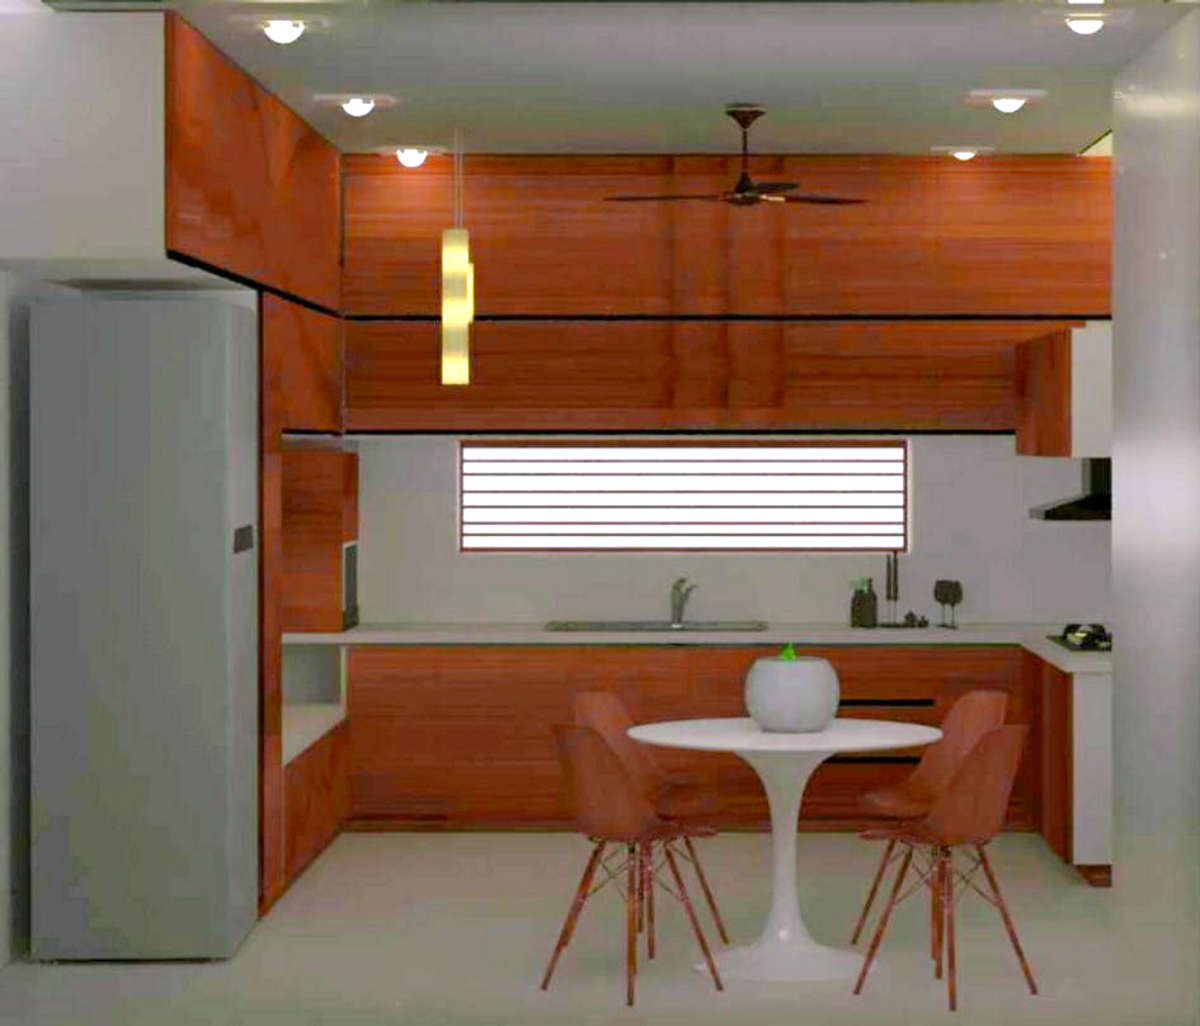 Kitchen, Lighting, Storage Designs by Interior Designer hsudesign studio, Malappuram | Kolo